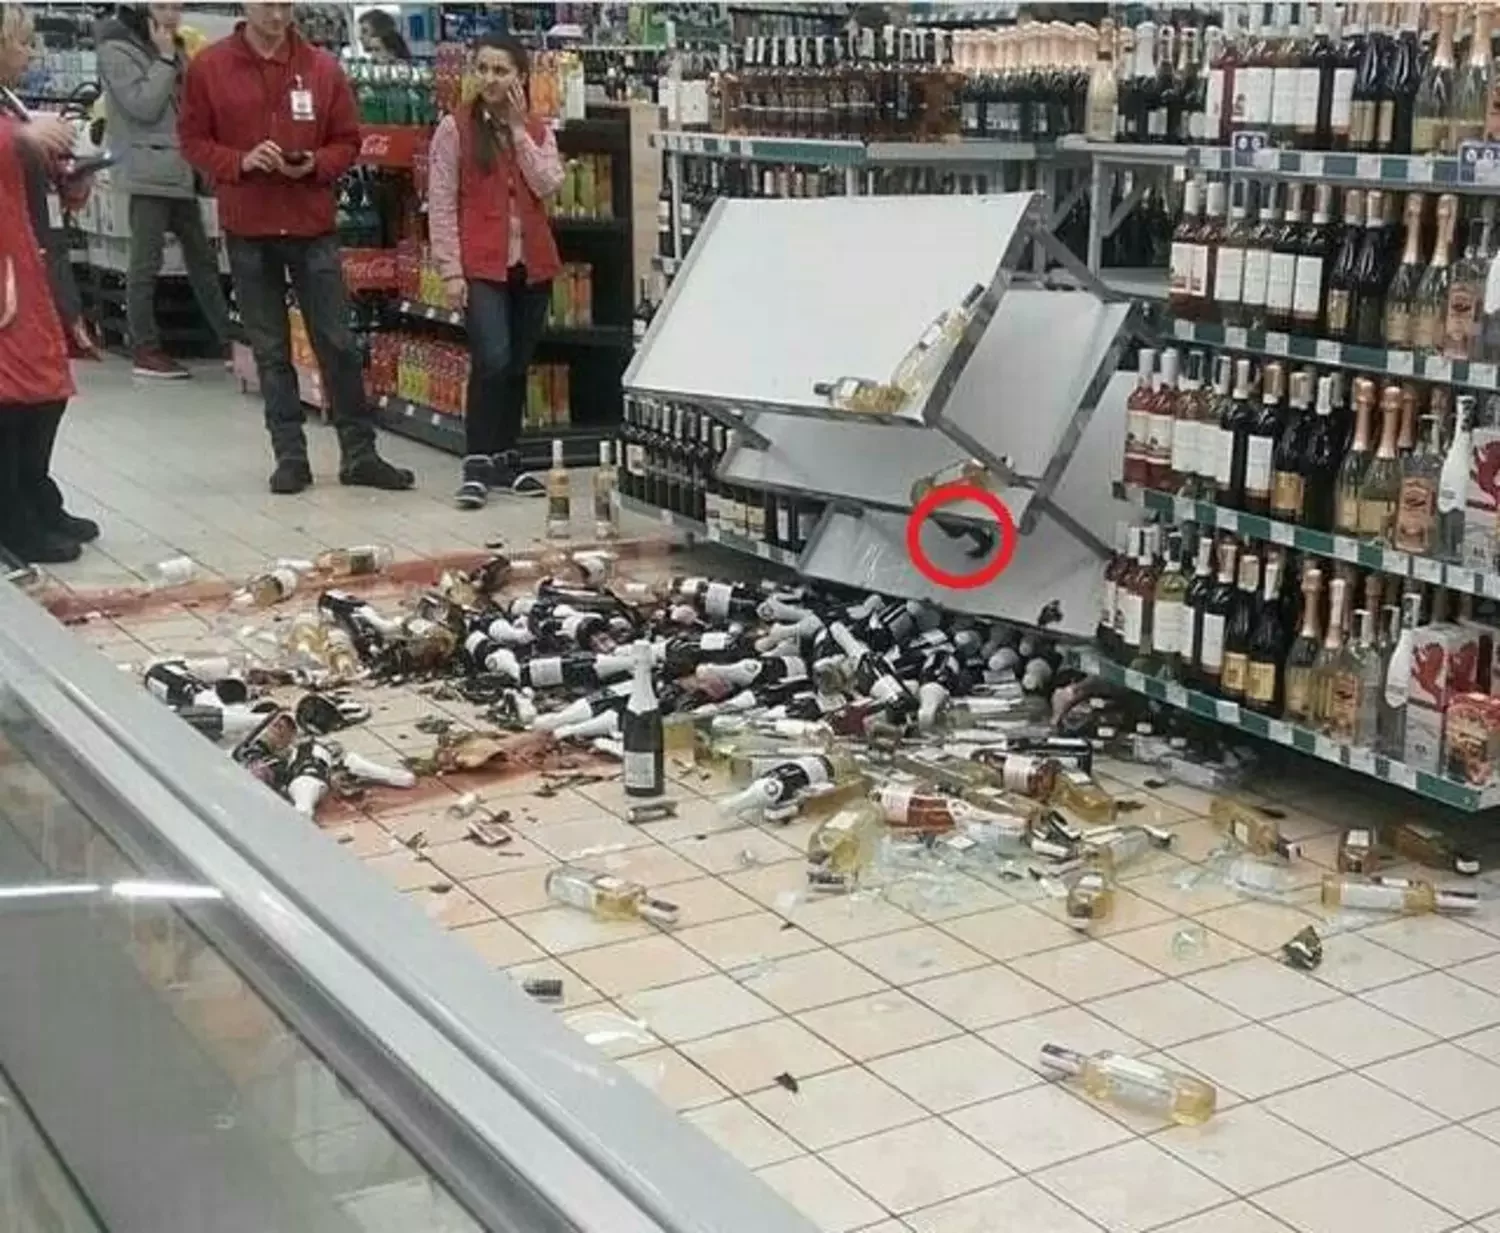 Разбитые бутылки в магазине. Разбитый товар в магазине. Разбитая витрина с алкоголем.